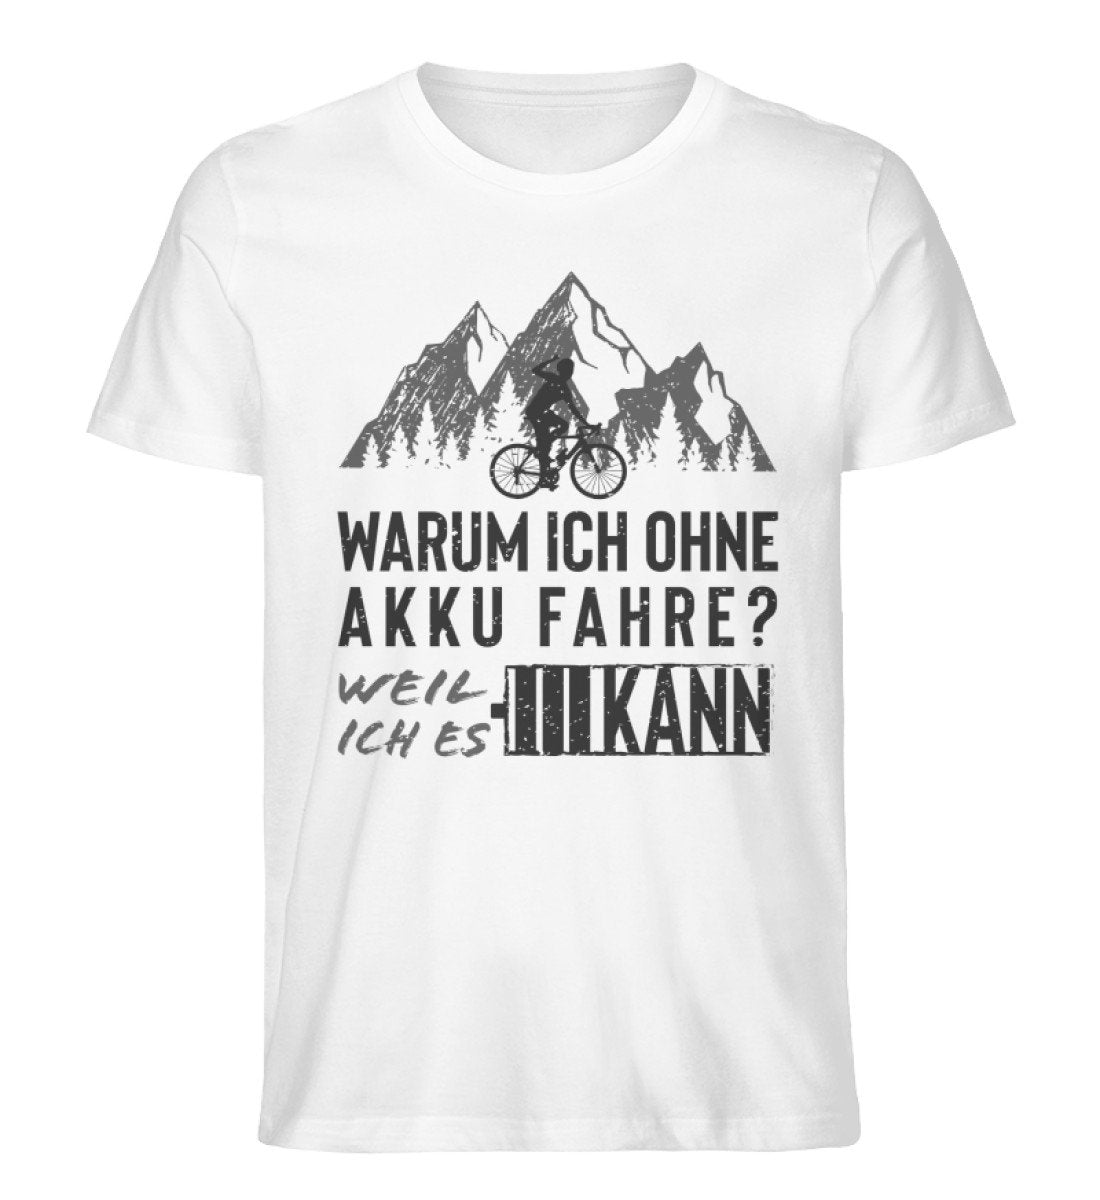 Warum ich ohne Akku fahre - Herren Organic T-Shirt' fahrrad mountainbike Weiß